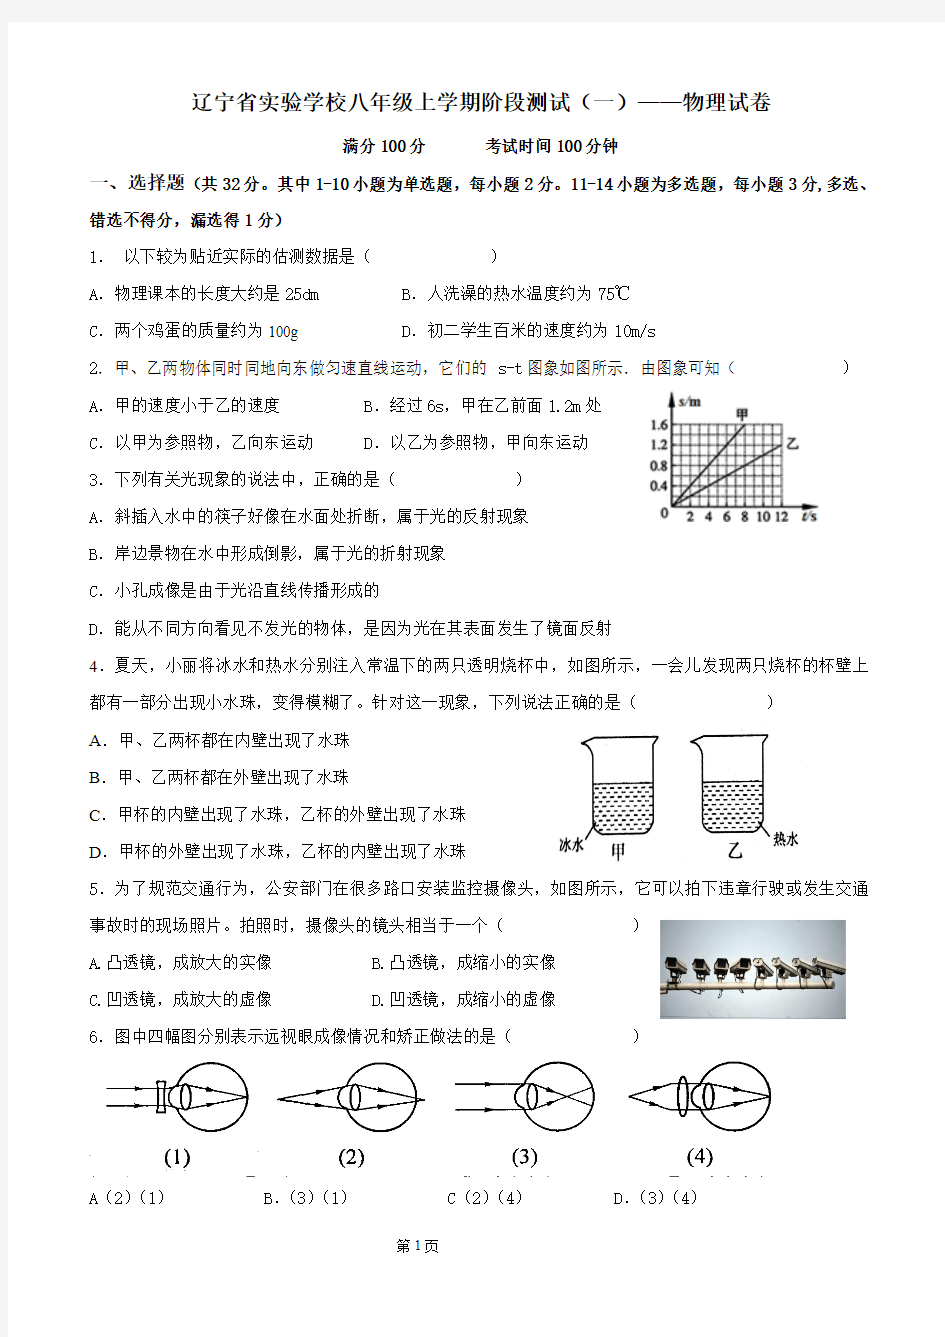 辽宁省实验学校八年级阶段测试(一)——物理试卷(打印版)